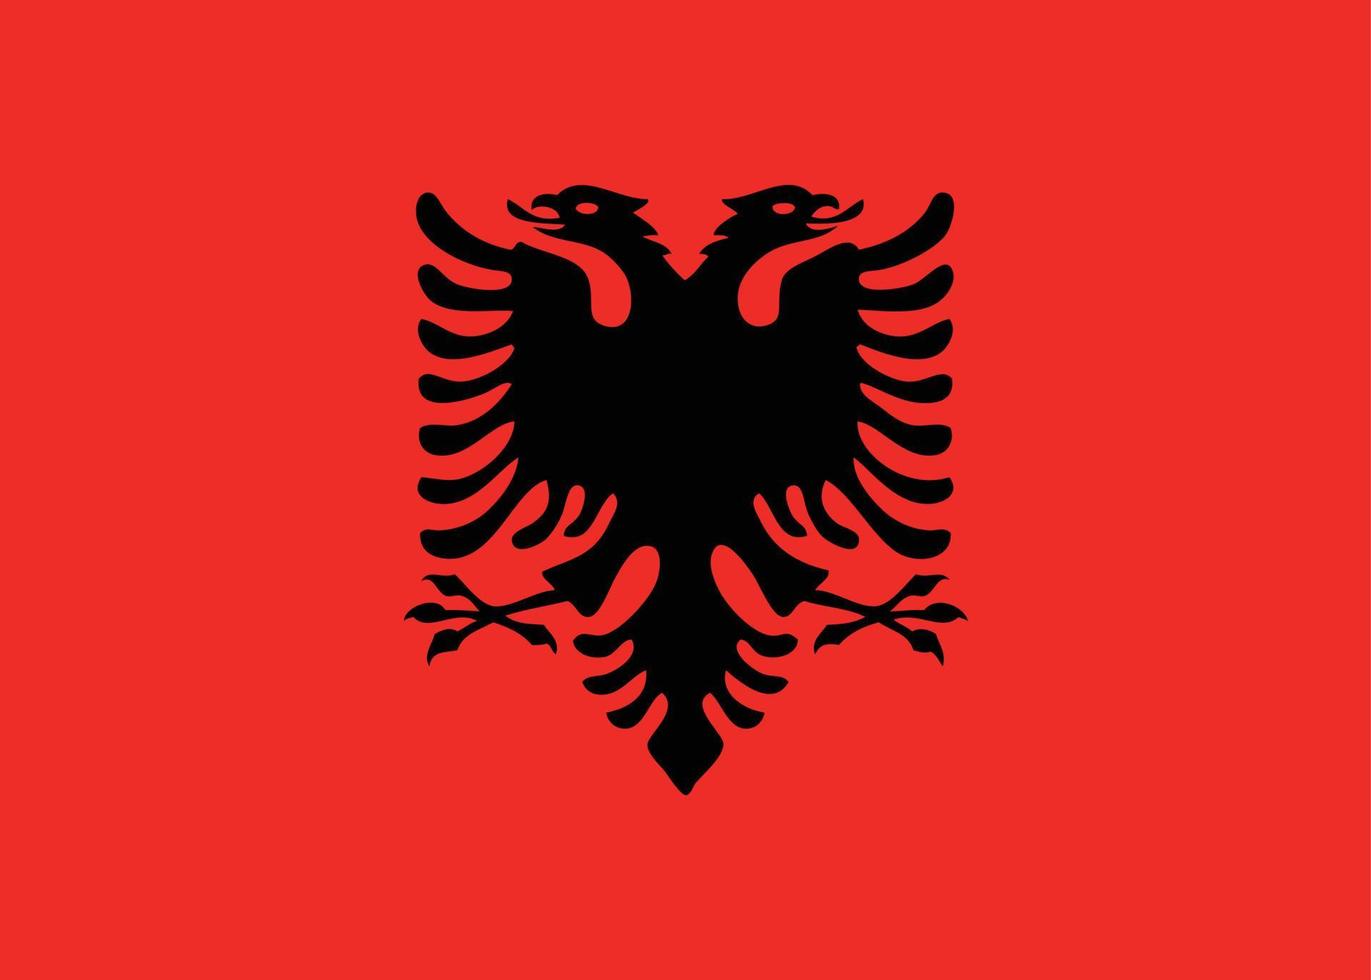 vetor de bandeira da albânia desenhado à mão, vetor de lek albanês desenhado à mão